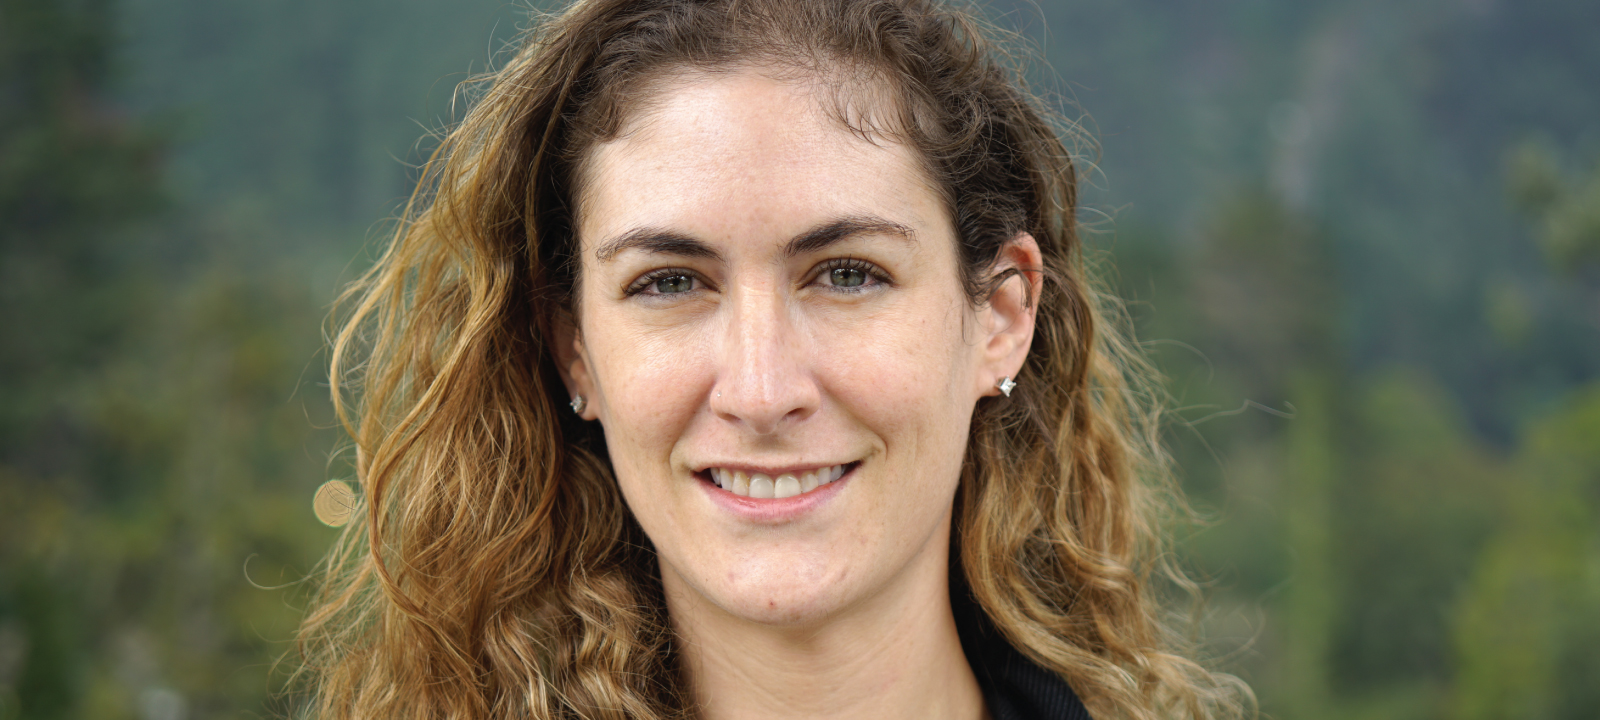 Natasha Bloch Morel, profesora asistente del Departamento de Ingeniería Biomédica